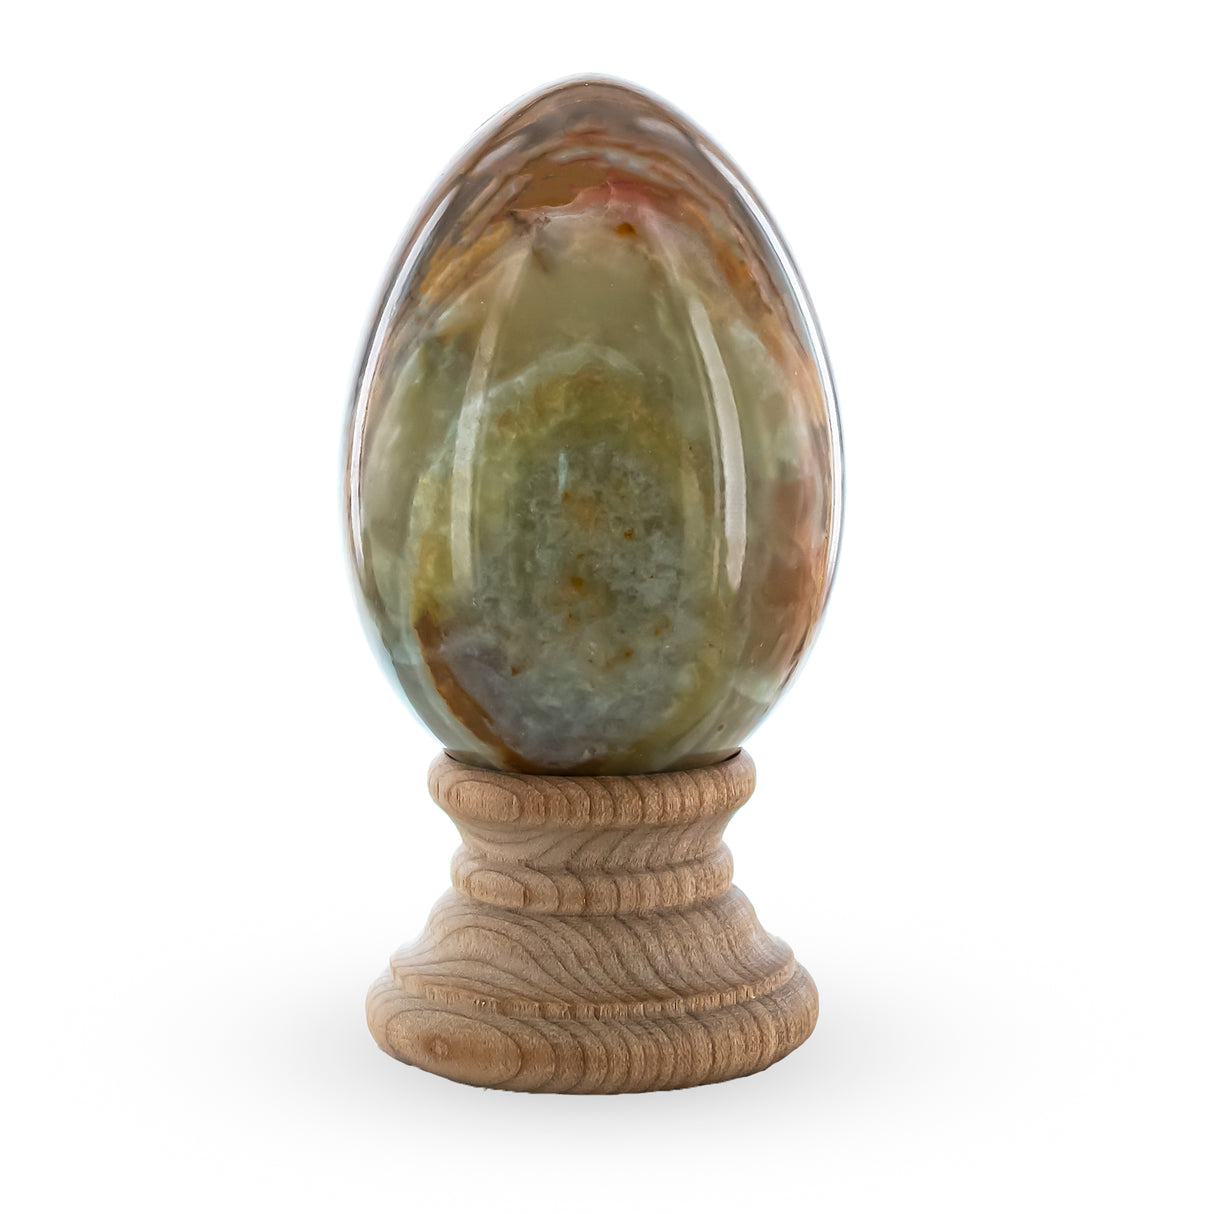 Buy Easter Eggs Stone by BestPysanky Online Gift Ship